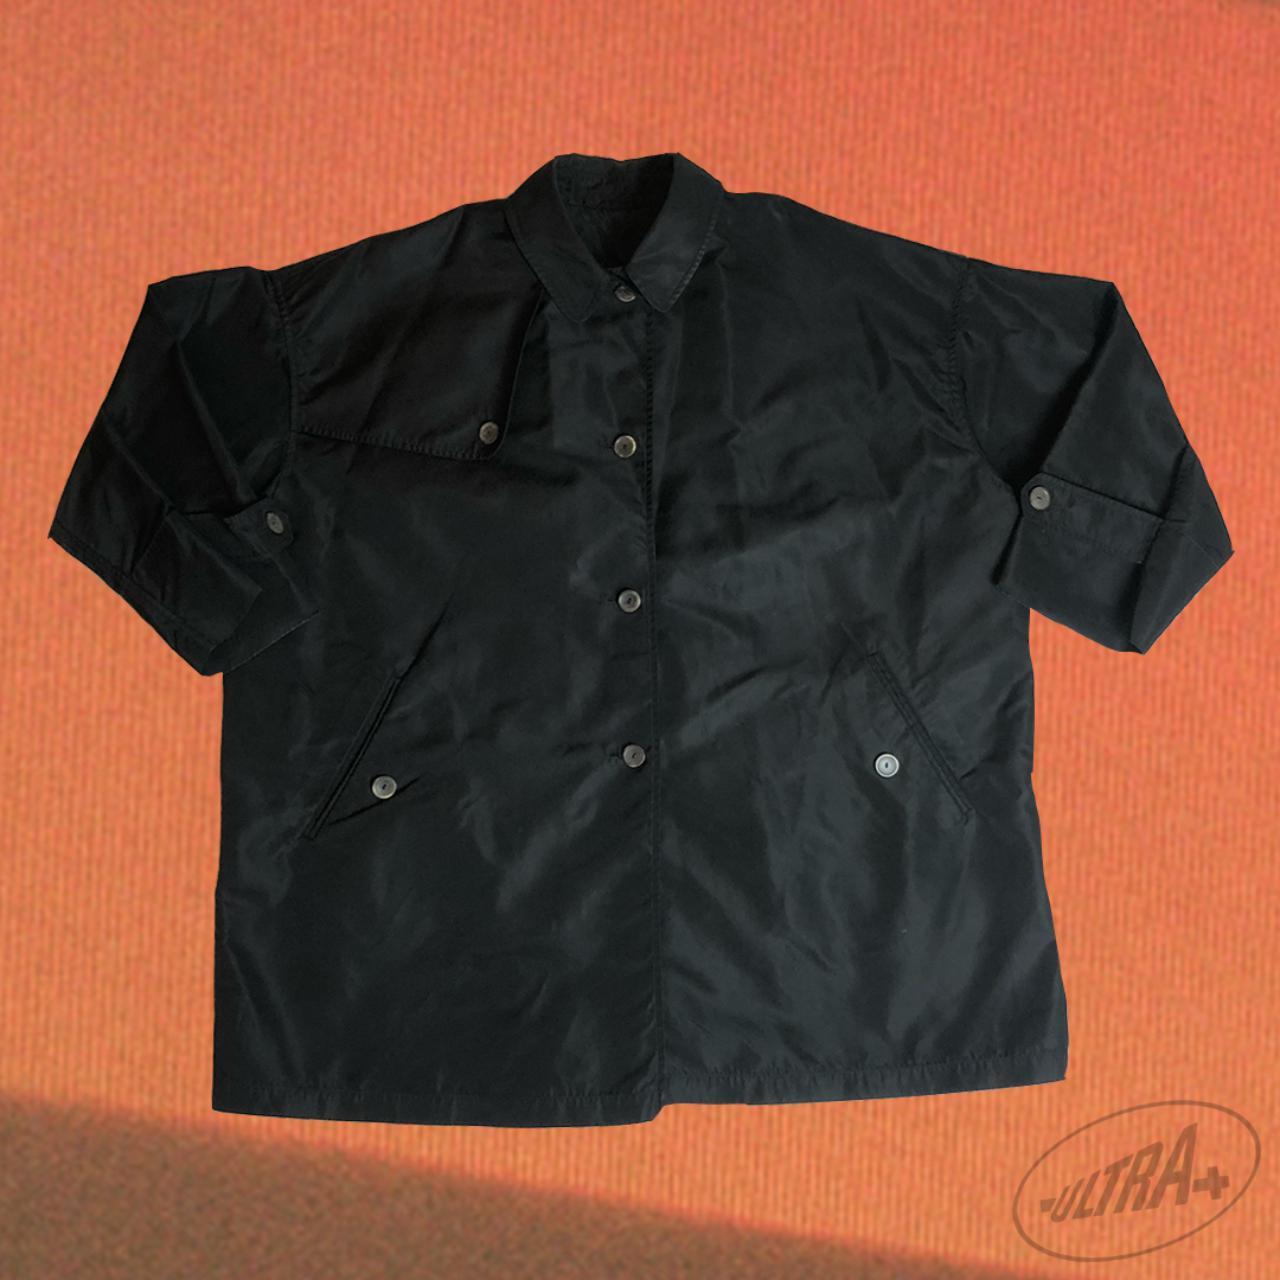 Product Image 1 - Vintage Jil sander jacket /